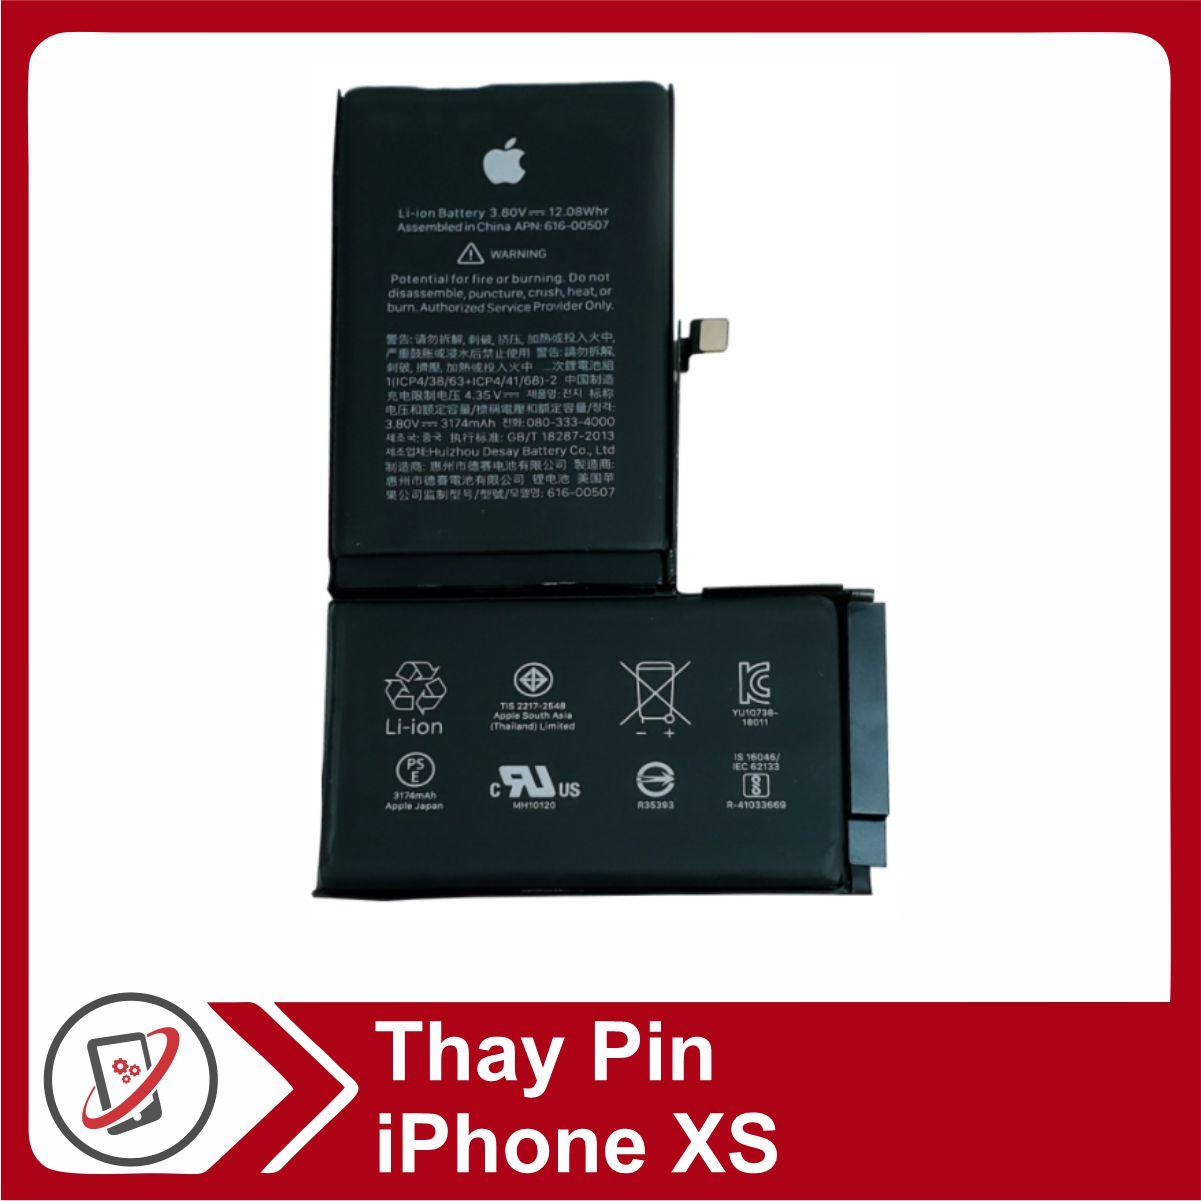 Thay pin iPhone X chính hãng ở Hà Nội giá bao nhiêu tiền?